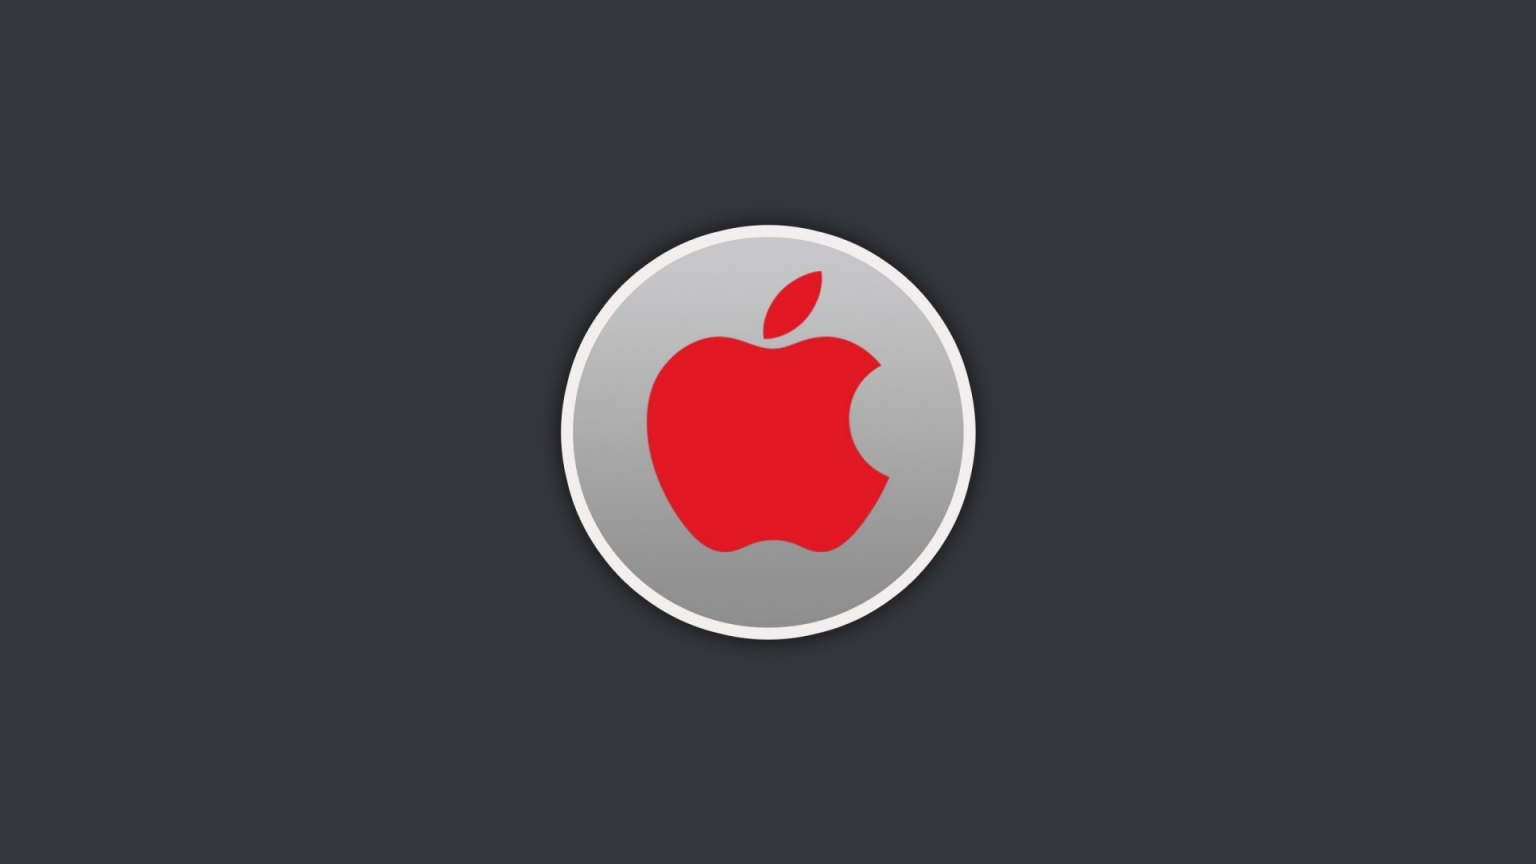 Red Apple Logo for 1536 x 864 HDTV resolution